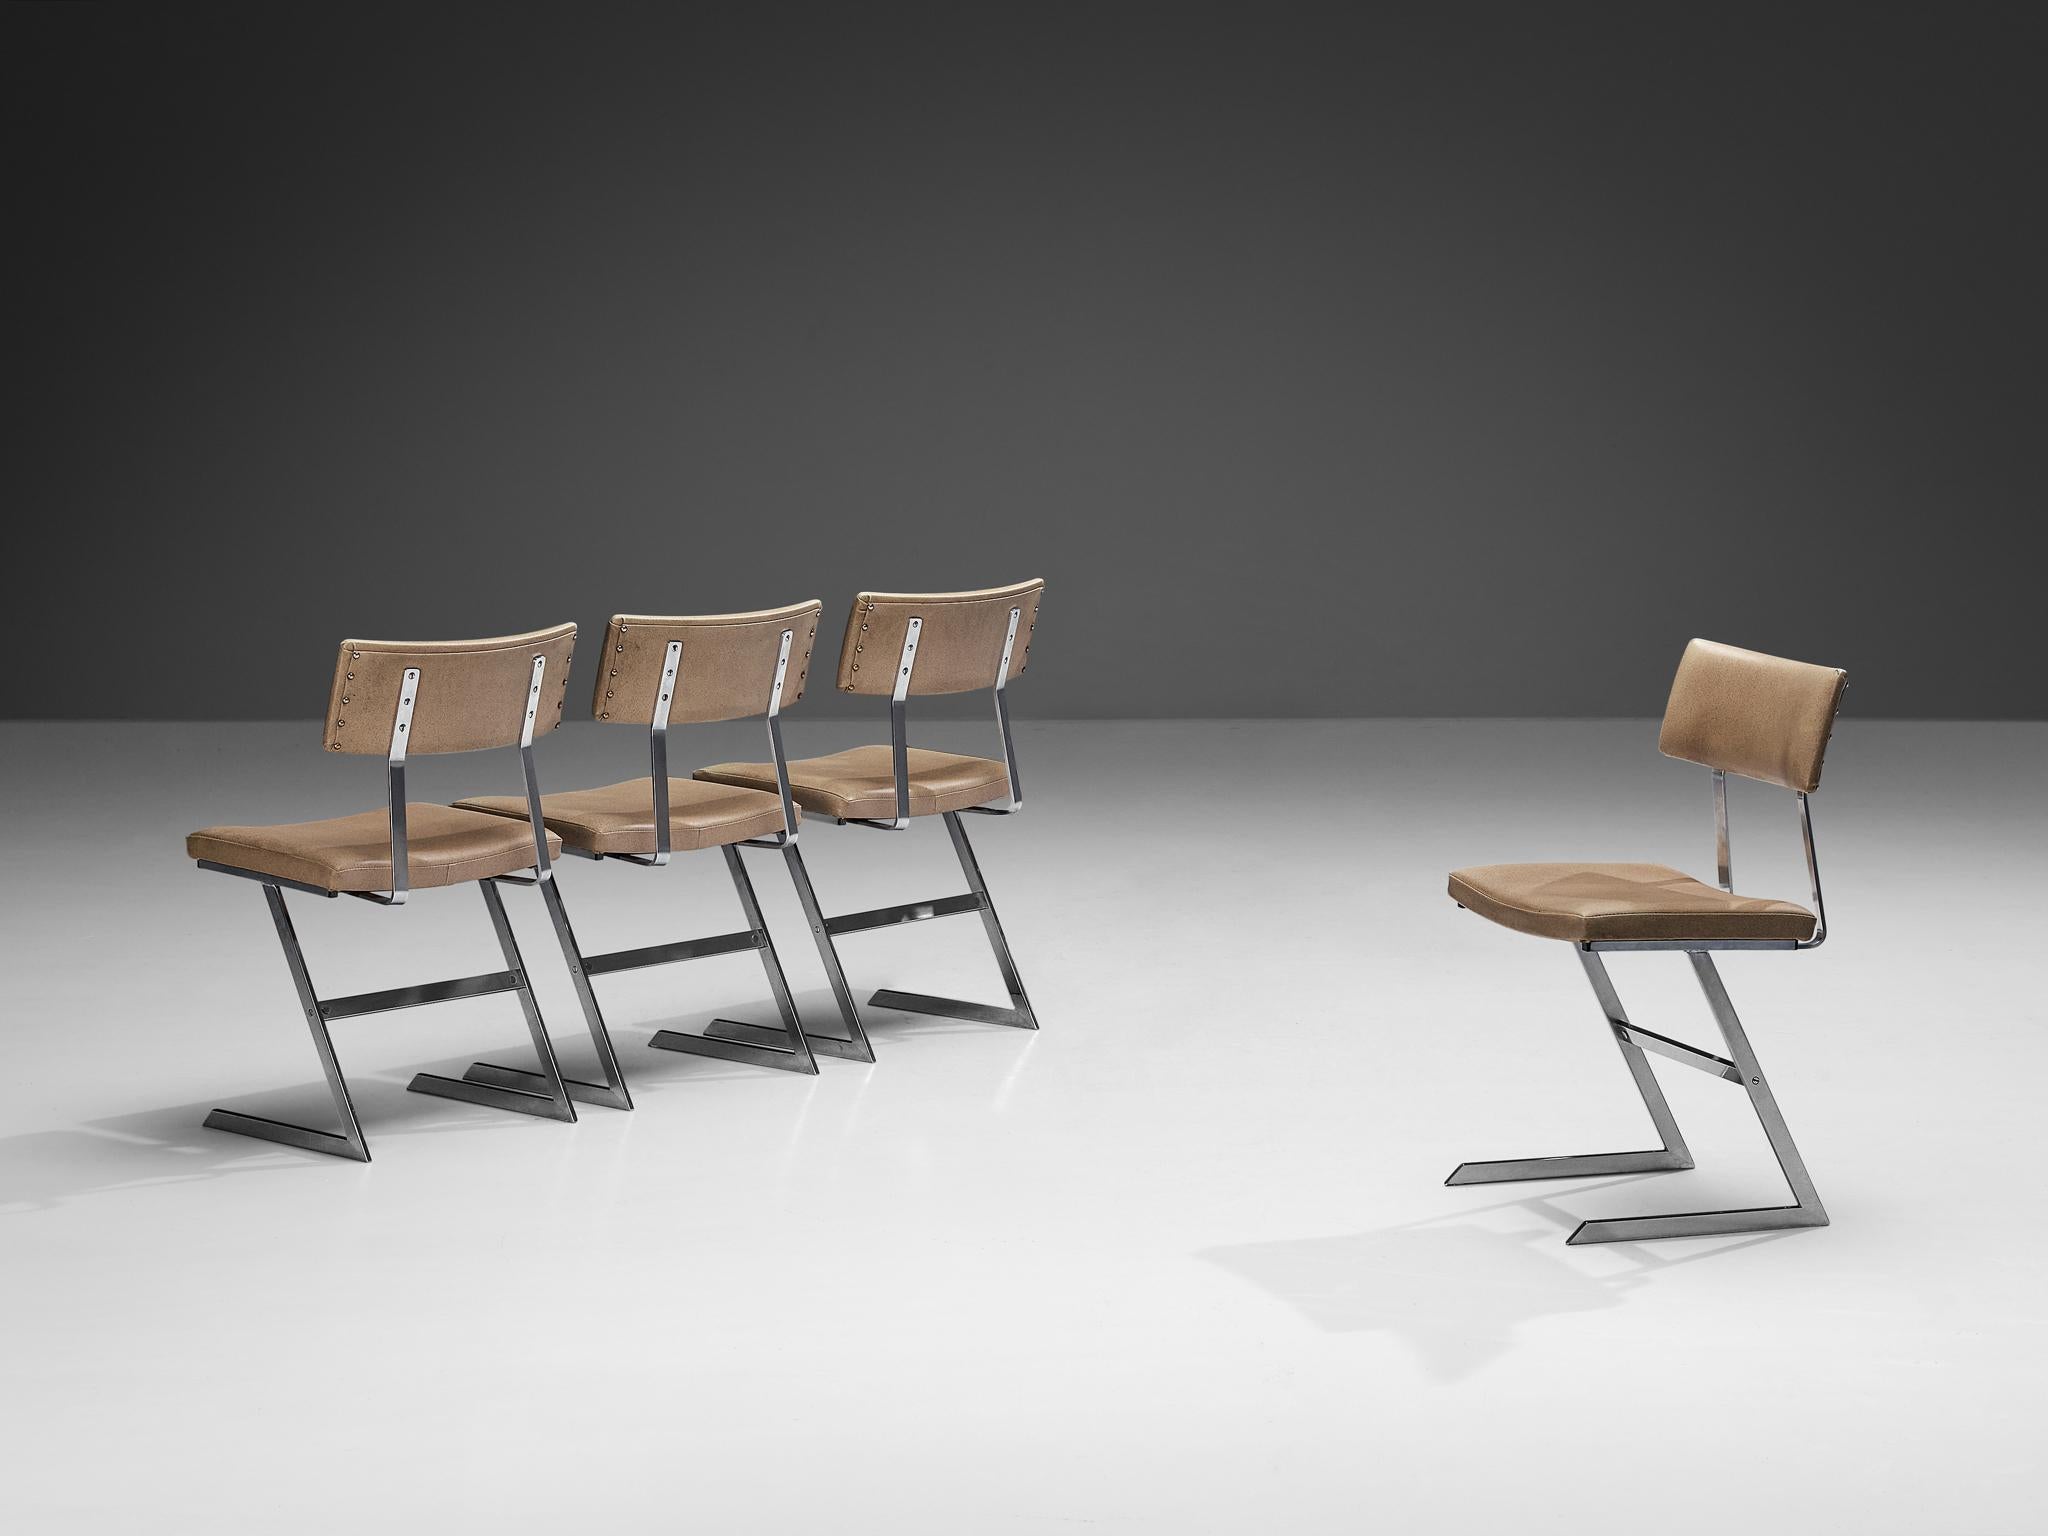 Satz von vier Esszimmerstühlen, verchromter Stahl, Kunstleder, Europa, 1960er Jahre. 

Dieses Design zeichnet sich durch eine offene Konstruktion aus, die durch den Z-förmigen Rahmen ermöglicht wird. Die Rückenlehne und die Sitzfläche sind aus